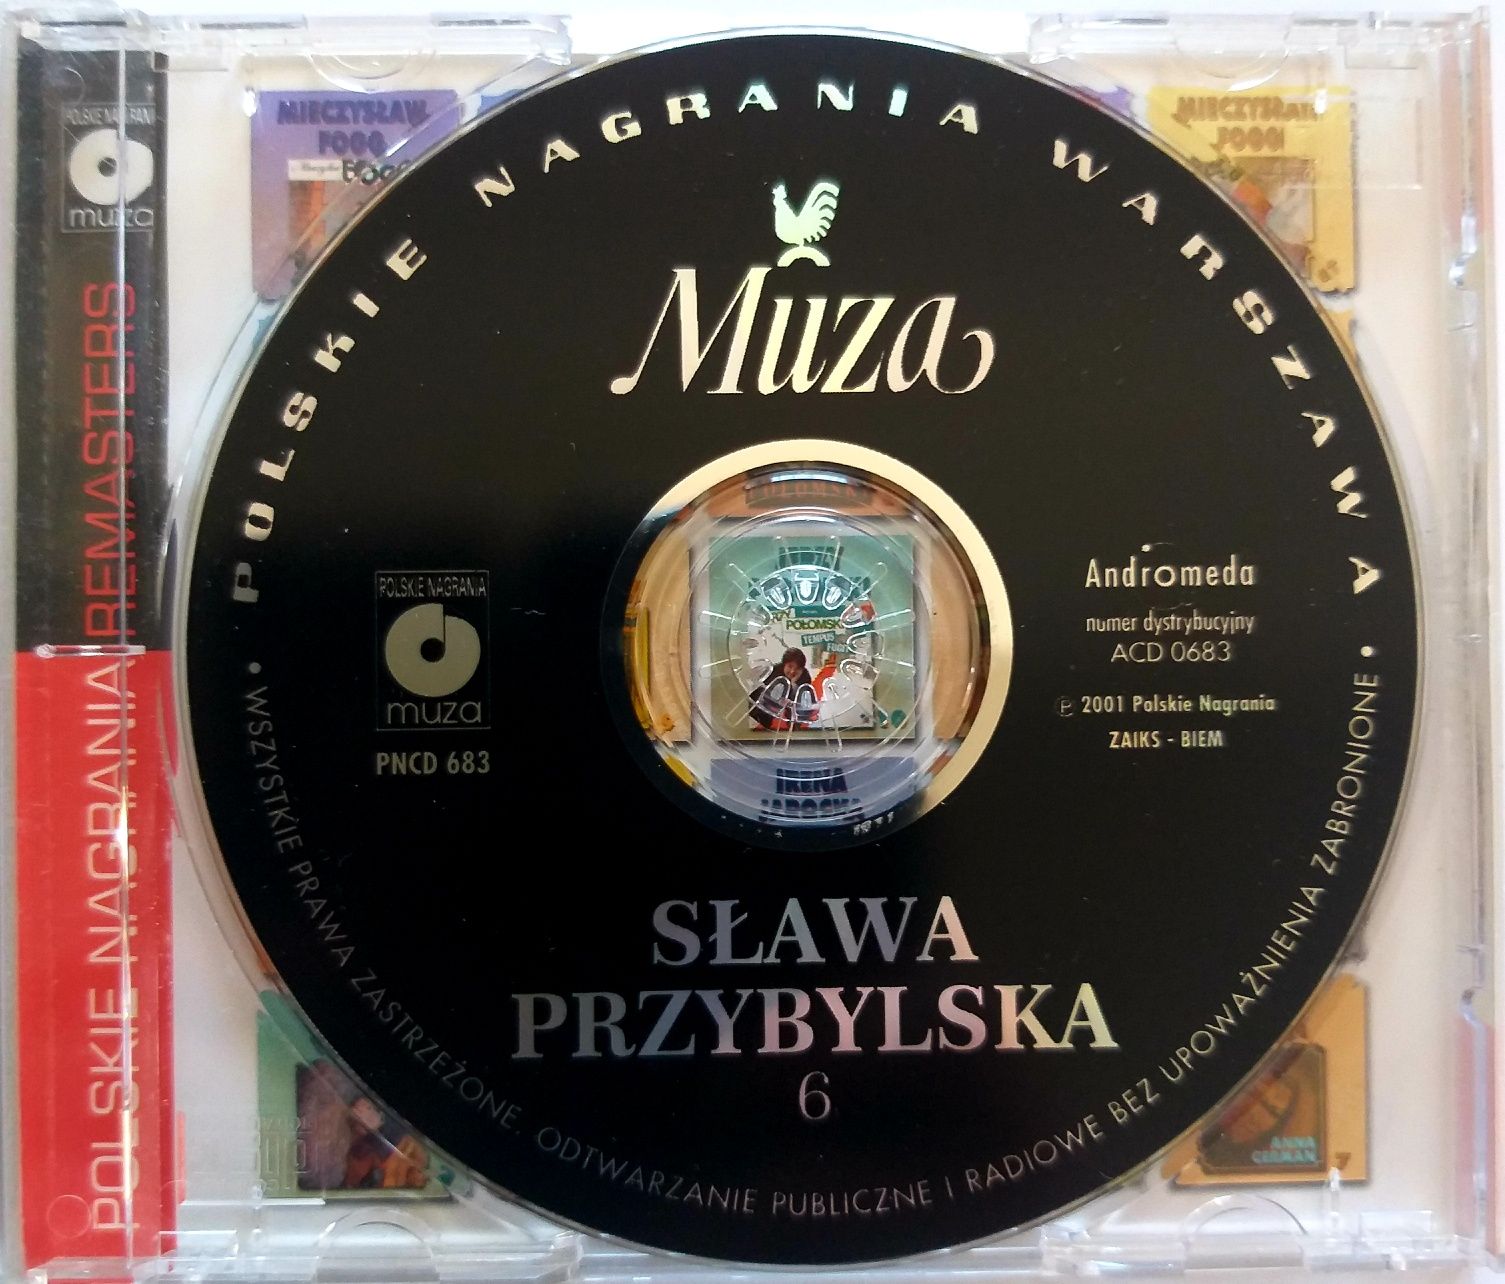 Sława Przybylska 6 2001r